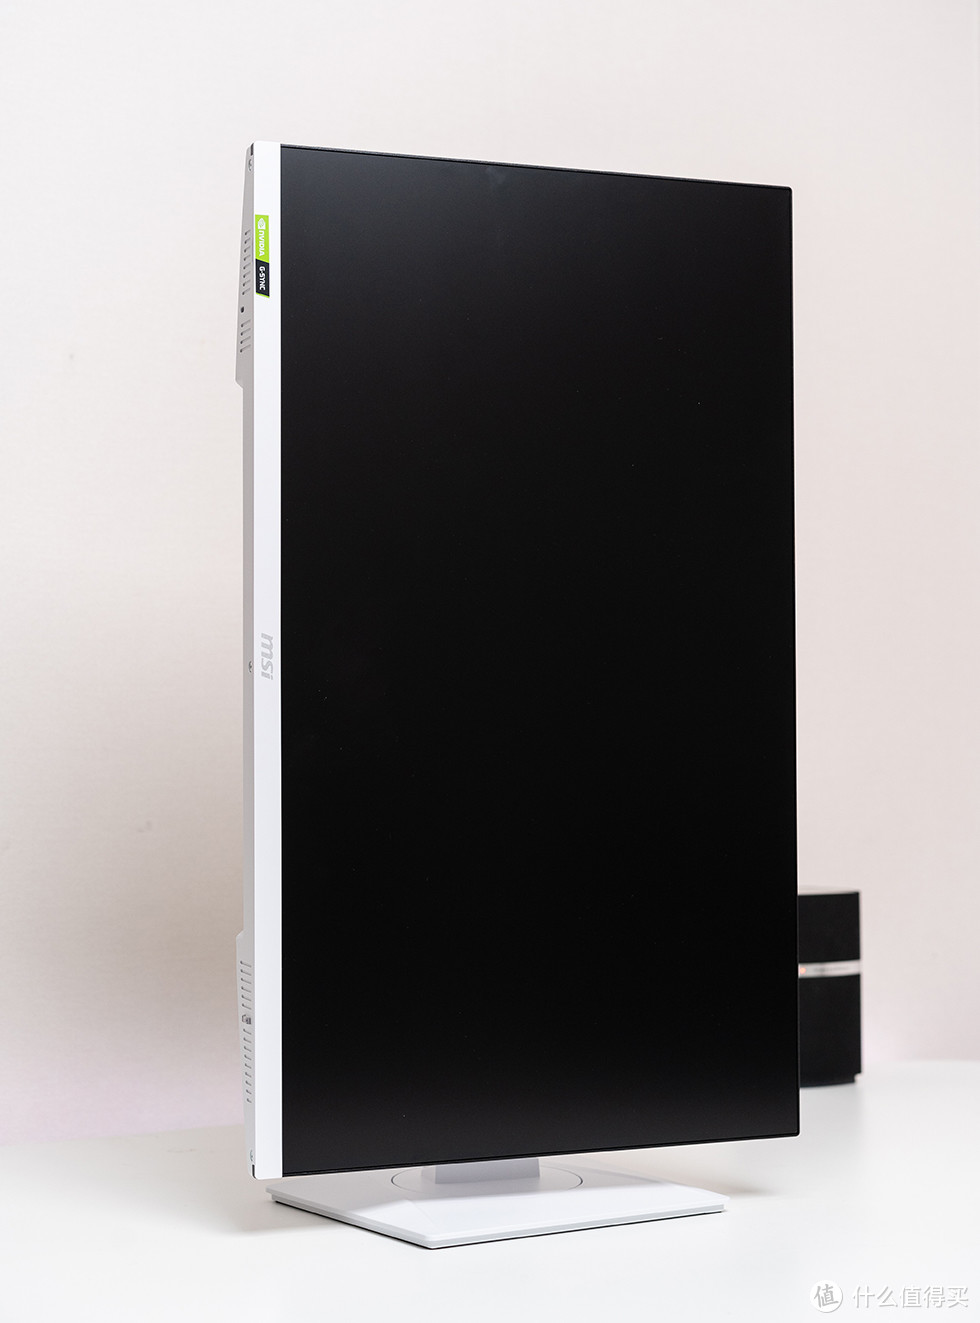 嫩白丝滑的高刷电竞显示器，微星G274QRFW 体验评测